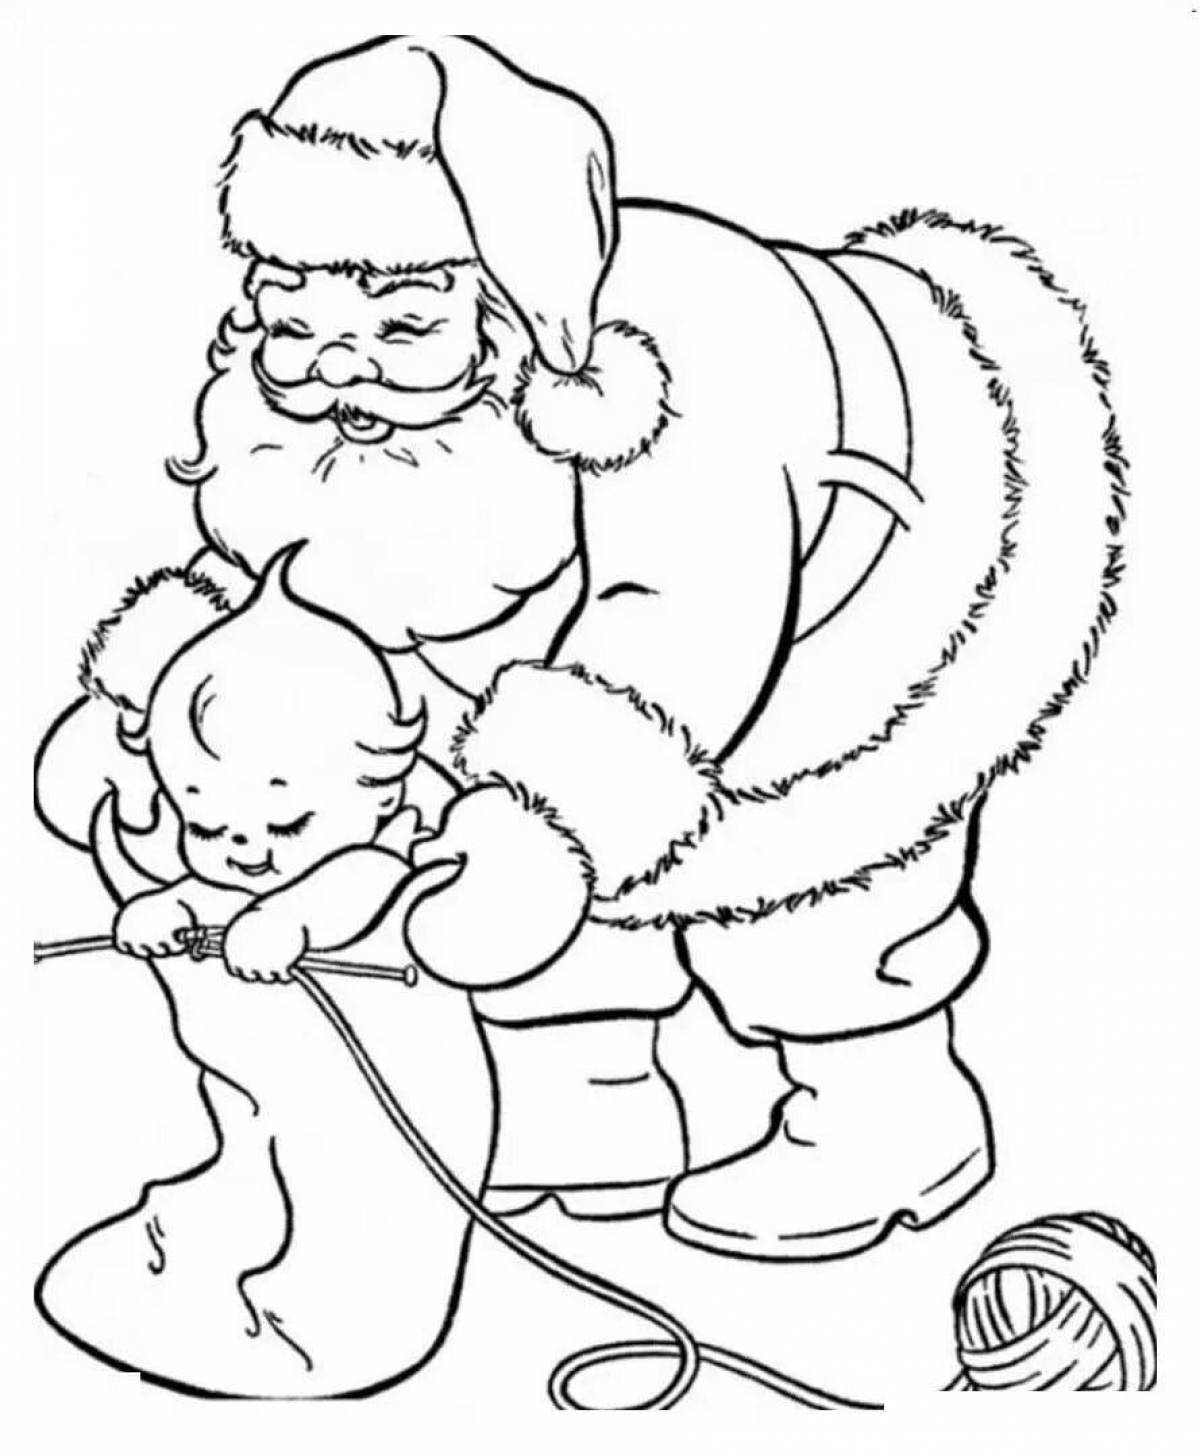 Wonderful santa claus coloring book